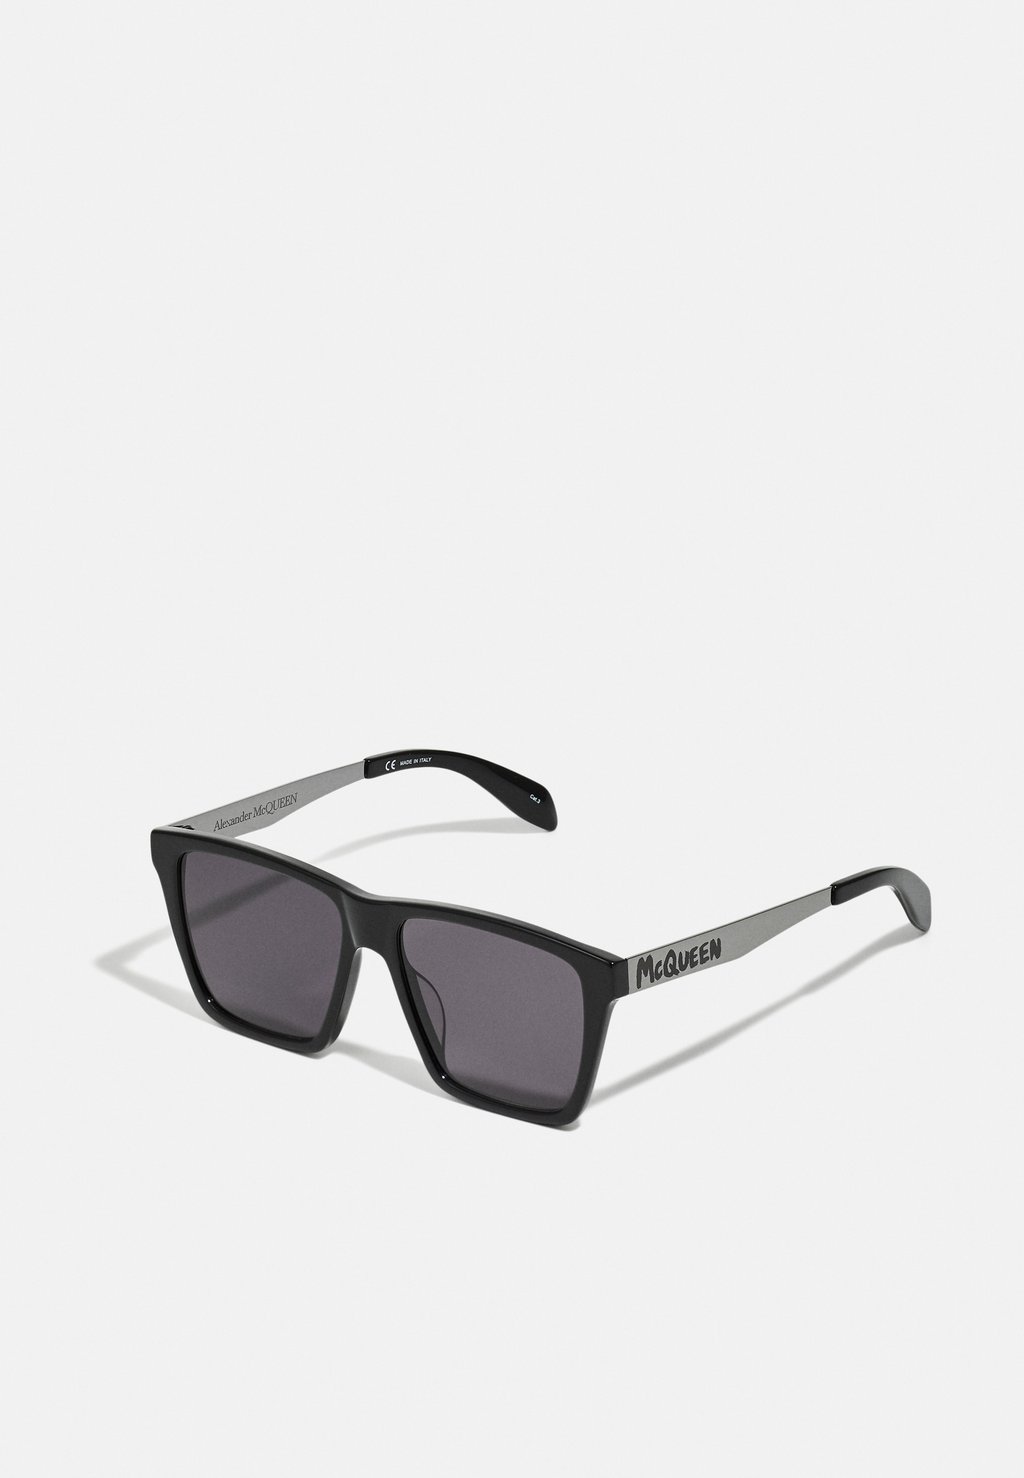 Солнцезащитные очки Alexander McQueen, черный/рутений/серый alexander mcqueen am 0337s 001 60 рутений металл